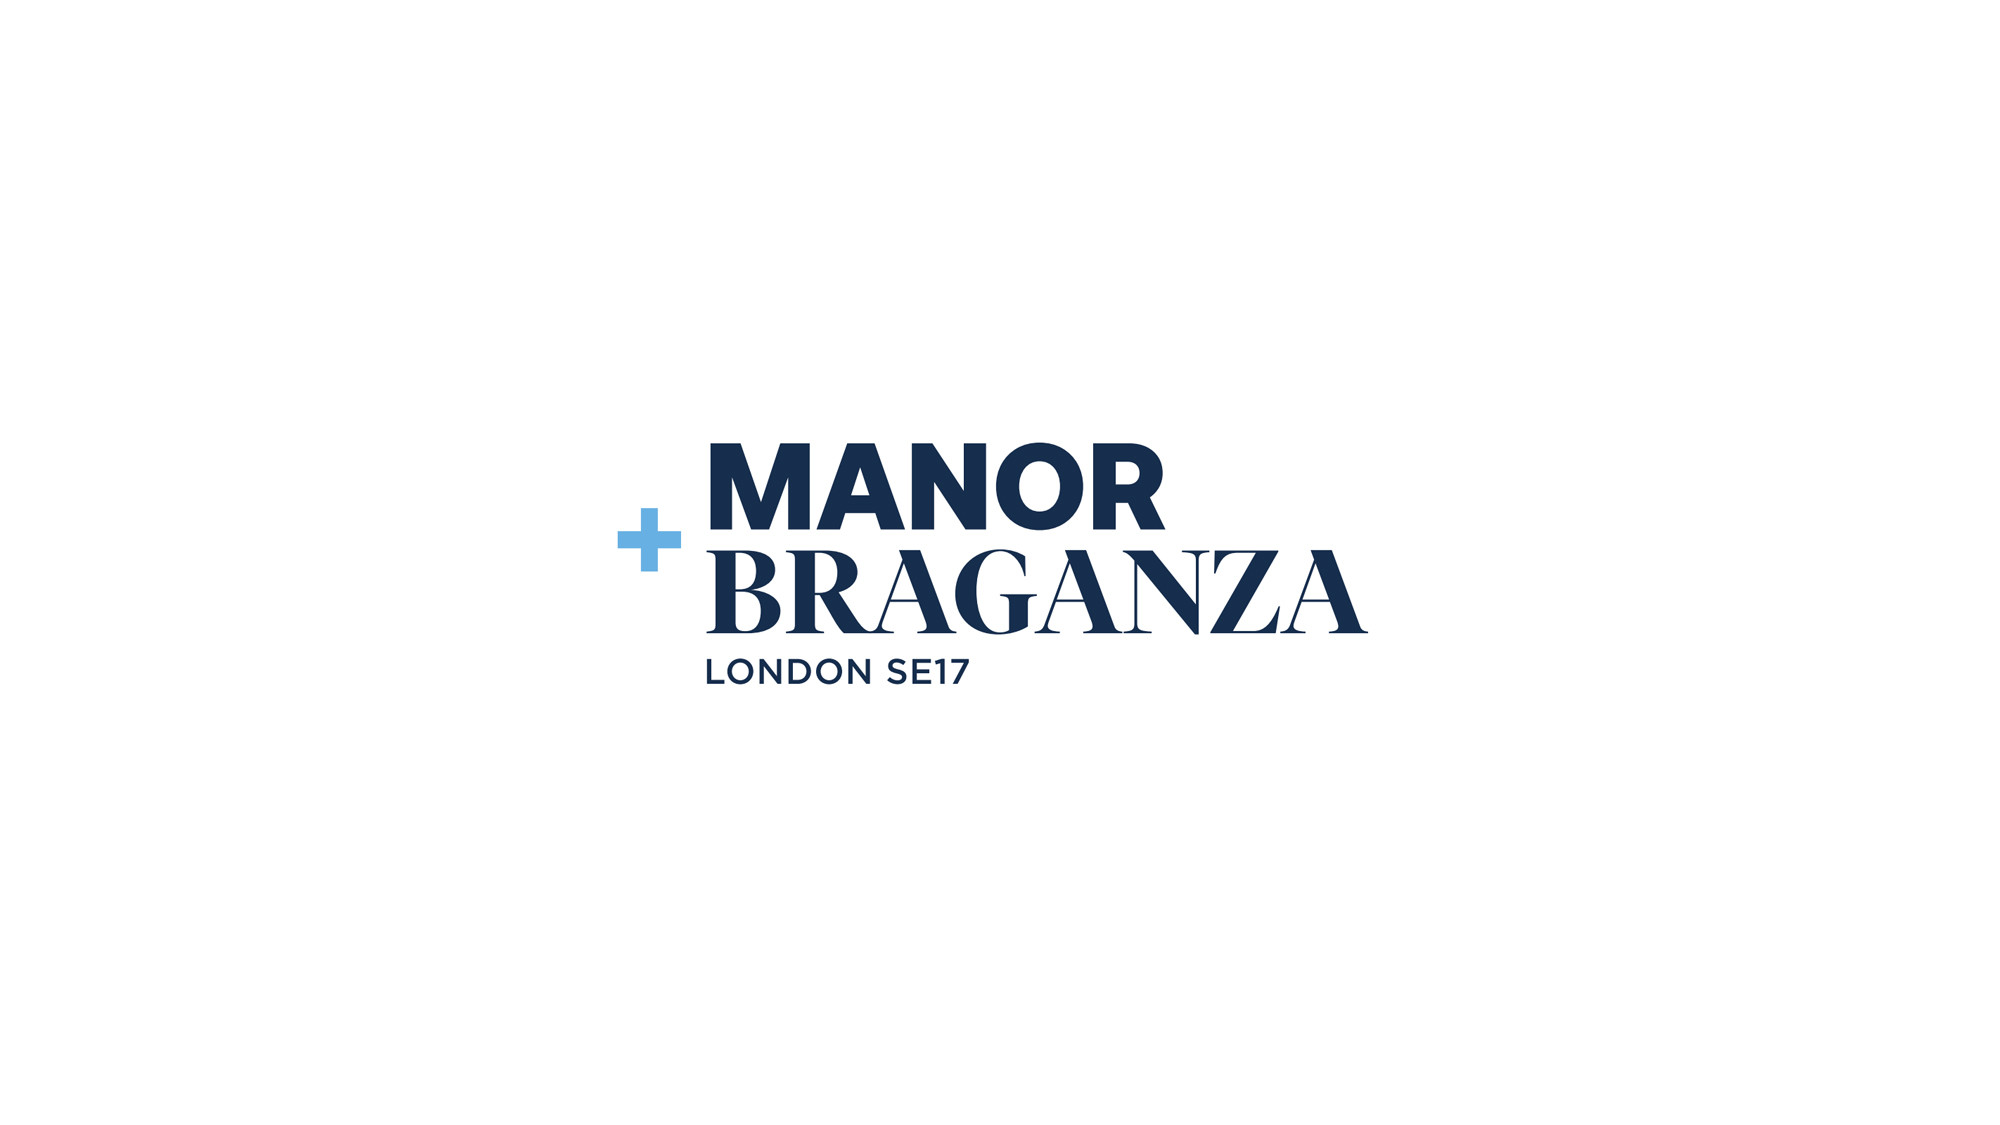 Manor & Braganza cover logo